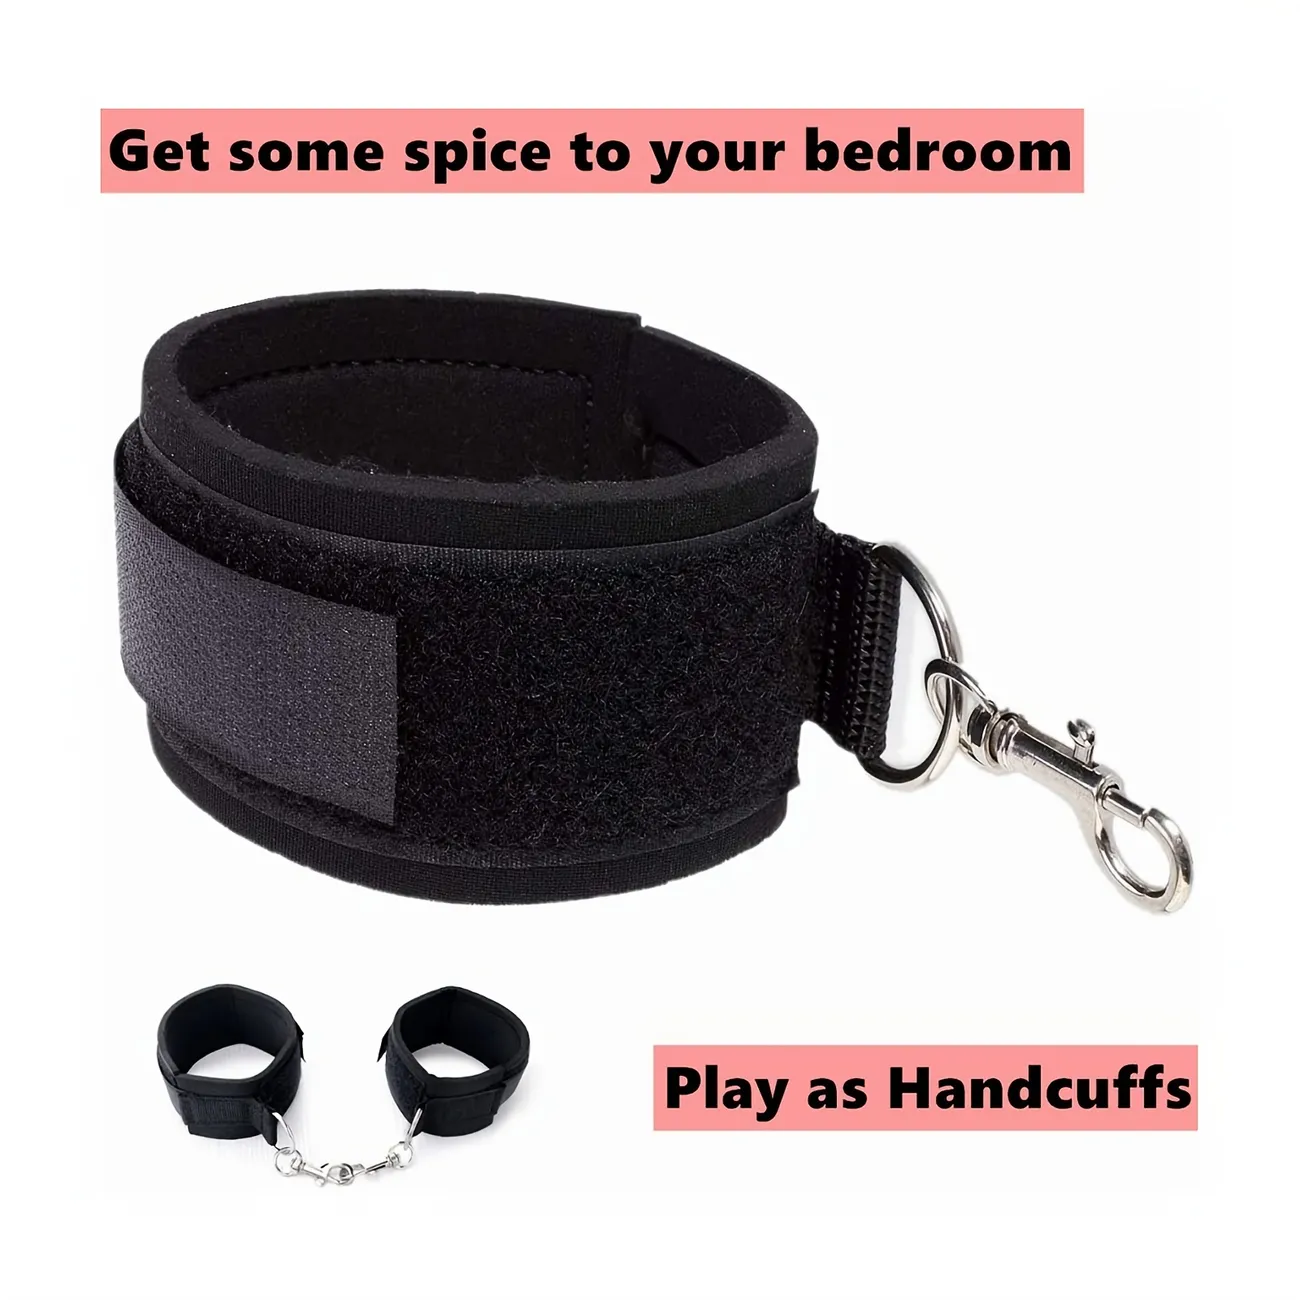 Thigh Wrist Cuffs, Restraints Handcuffs Bdsm Sex Toys For Women Leg Straps Tie Set Bondage For Couples Sm Games photo